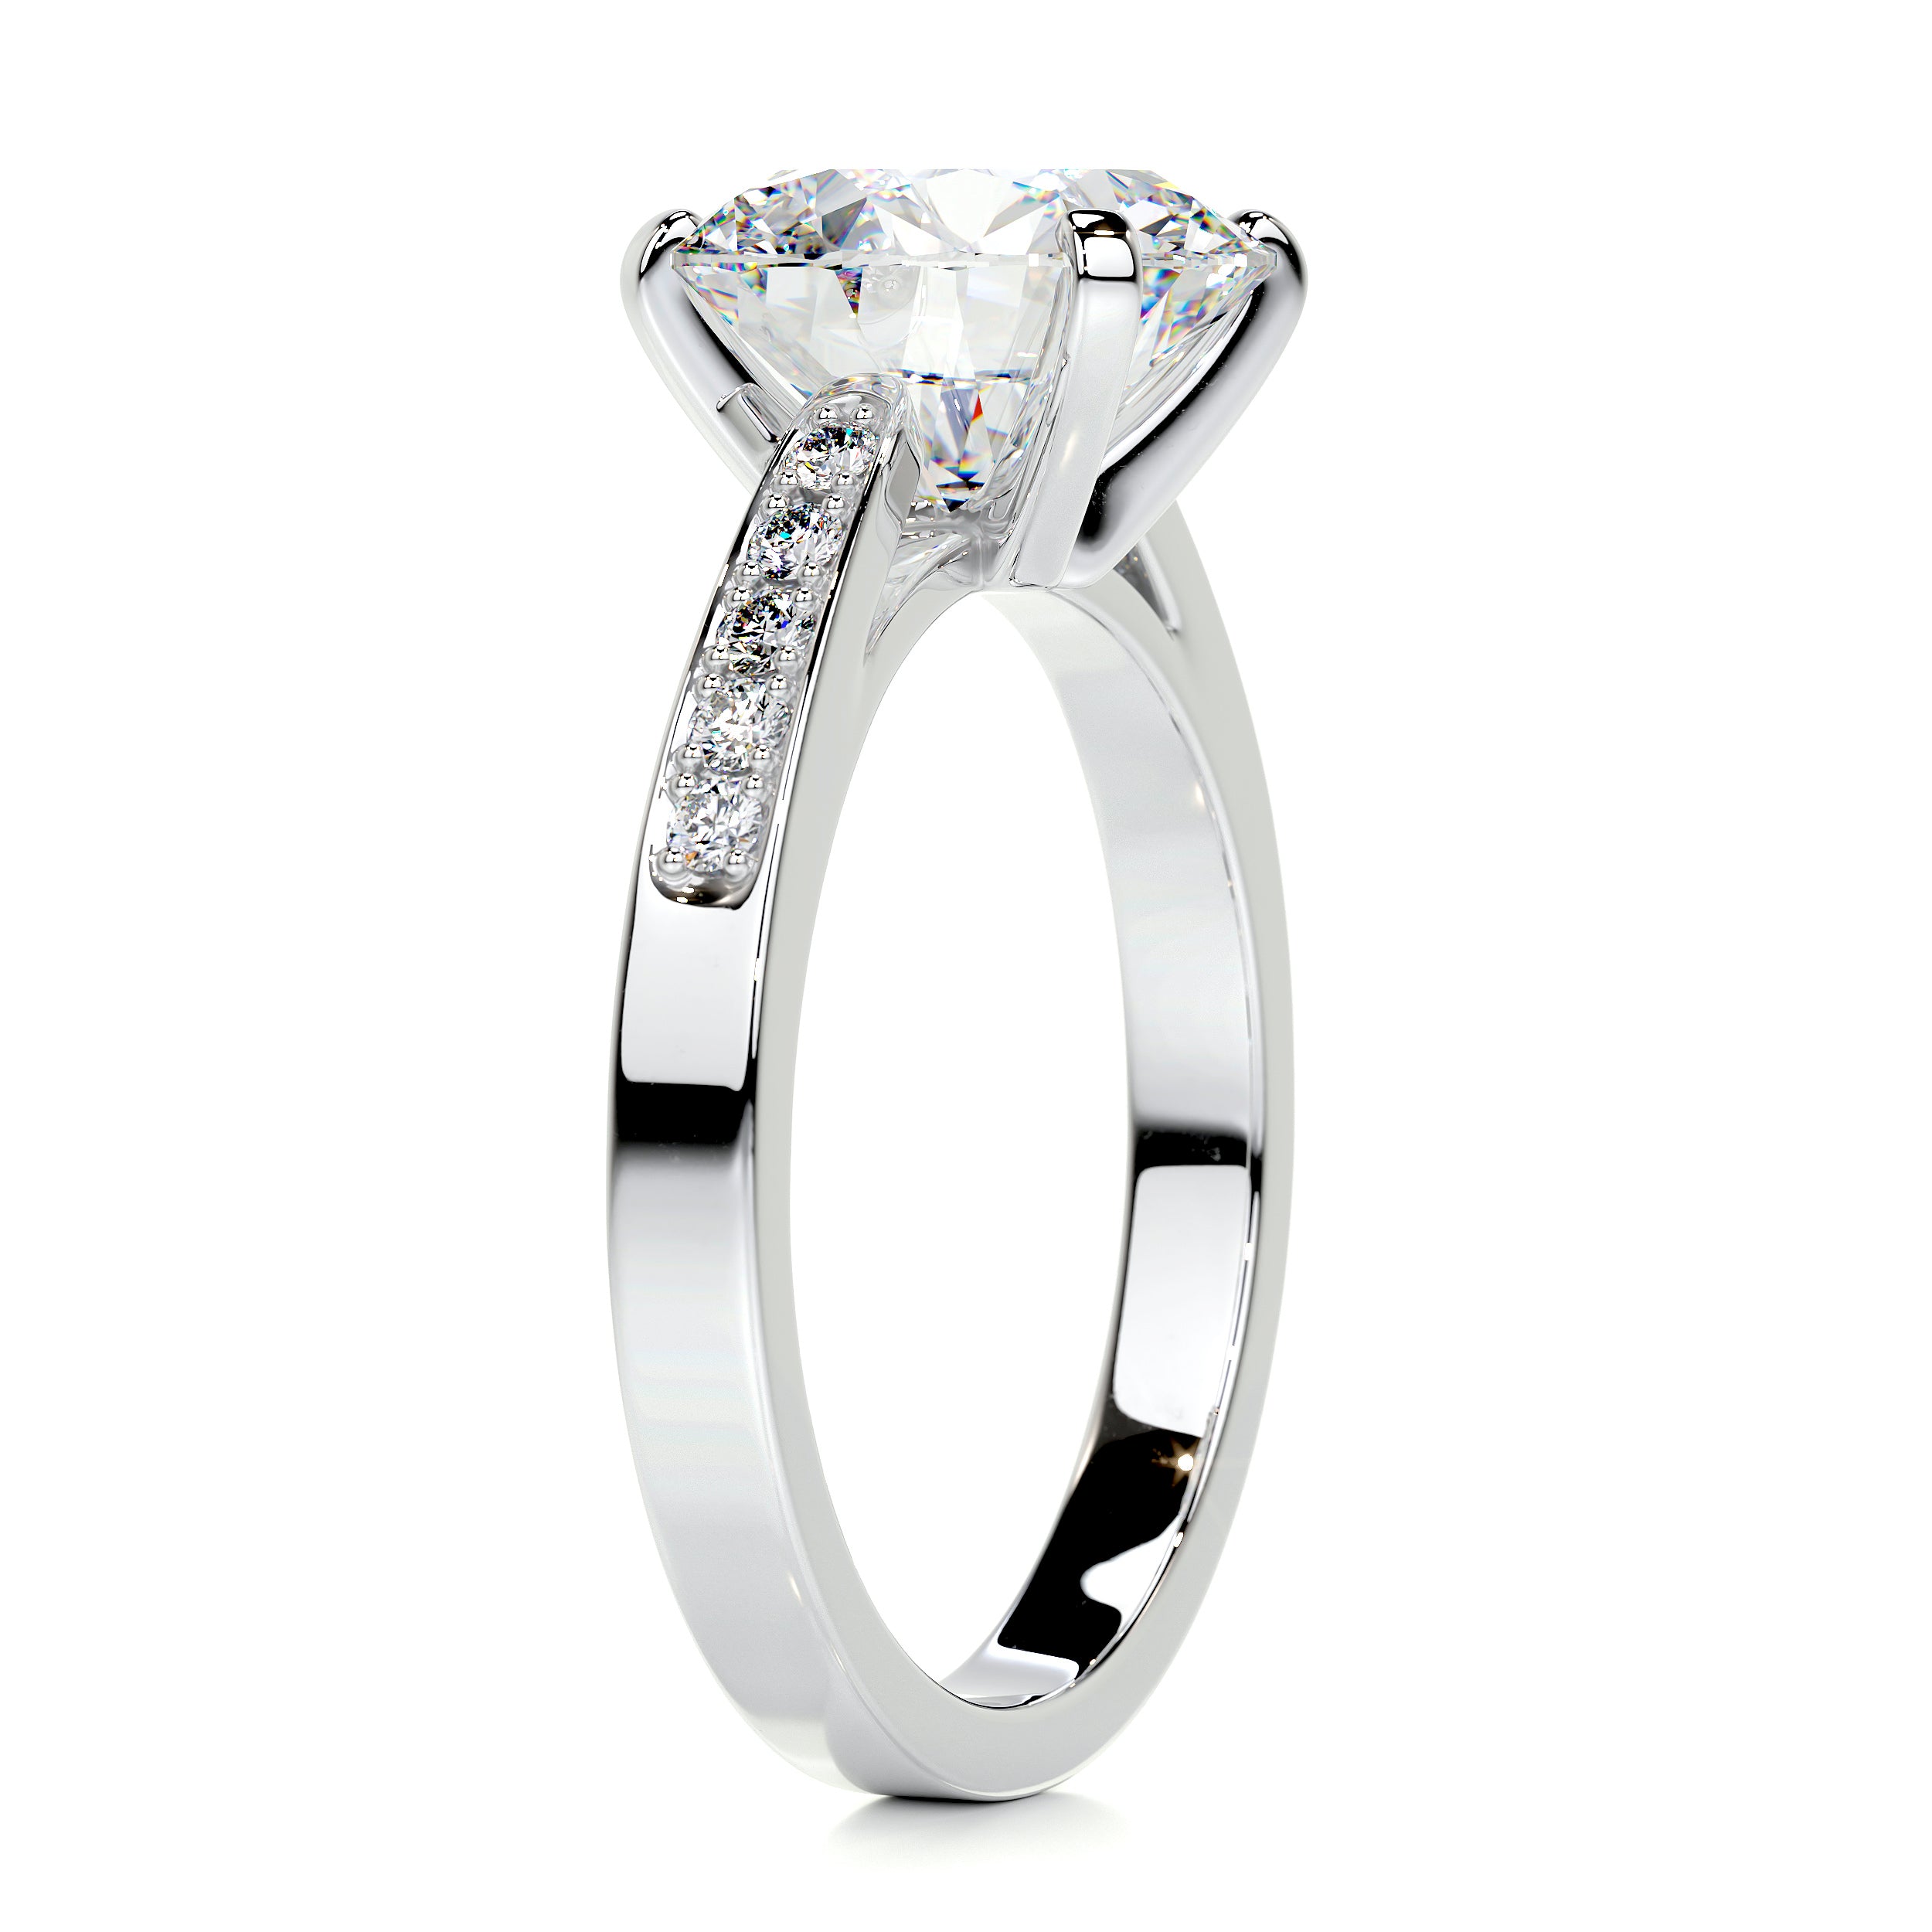 Margaret Moissanite & Diamonds Ring   (3.22 Carat) -14K White Gold